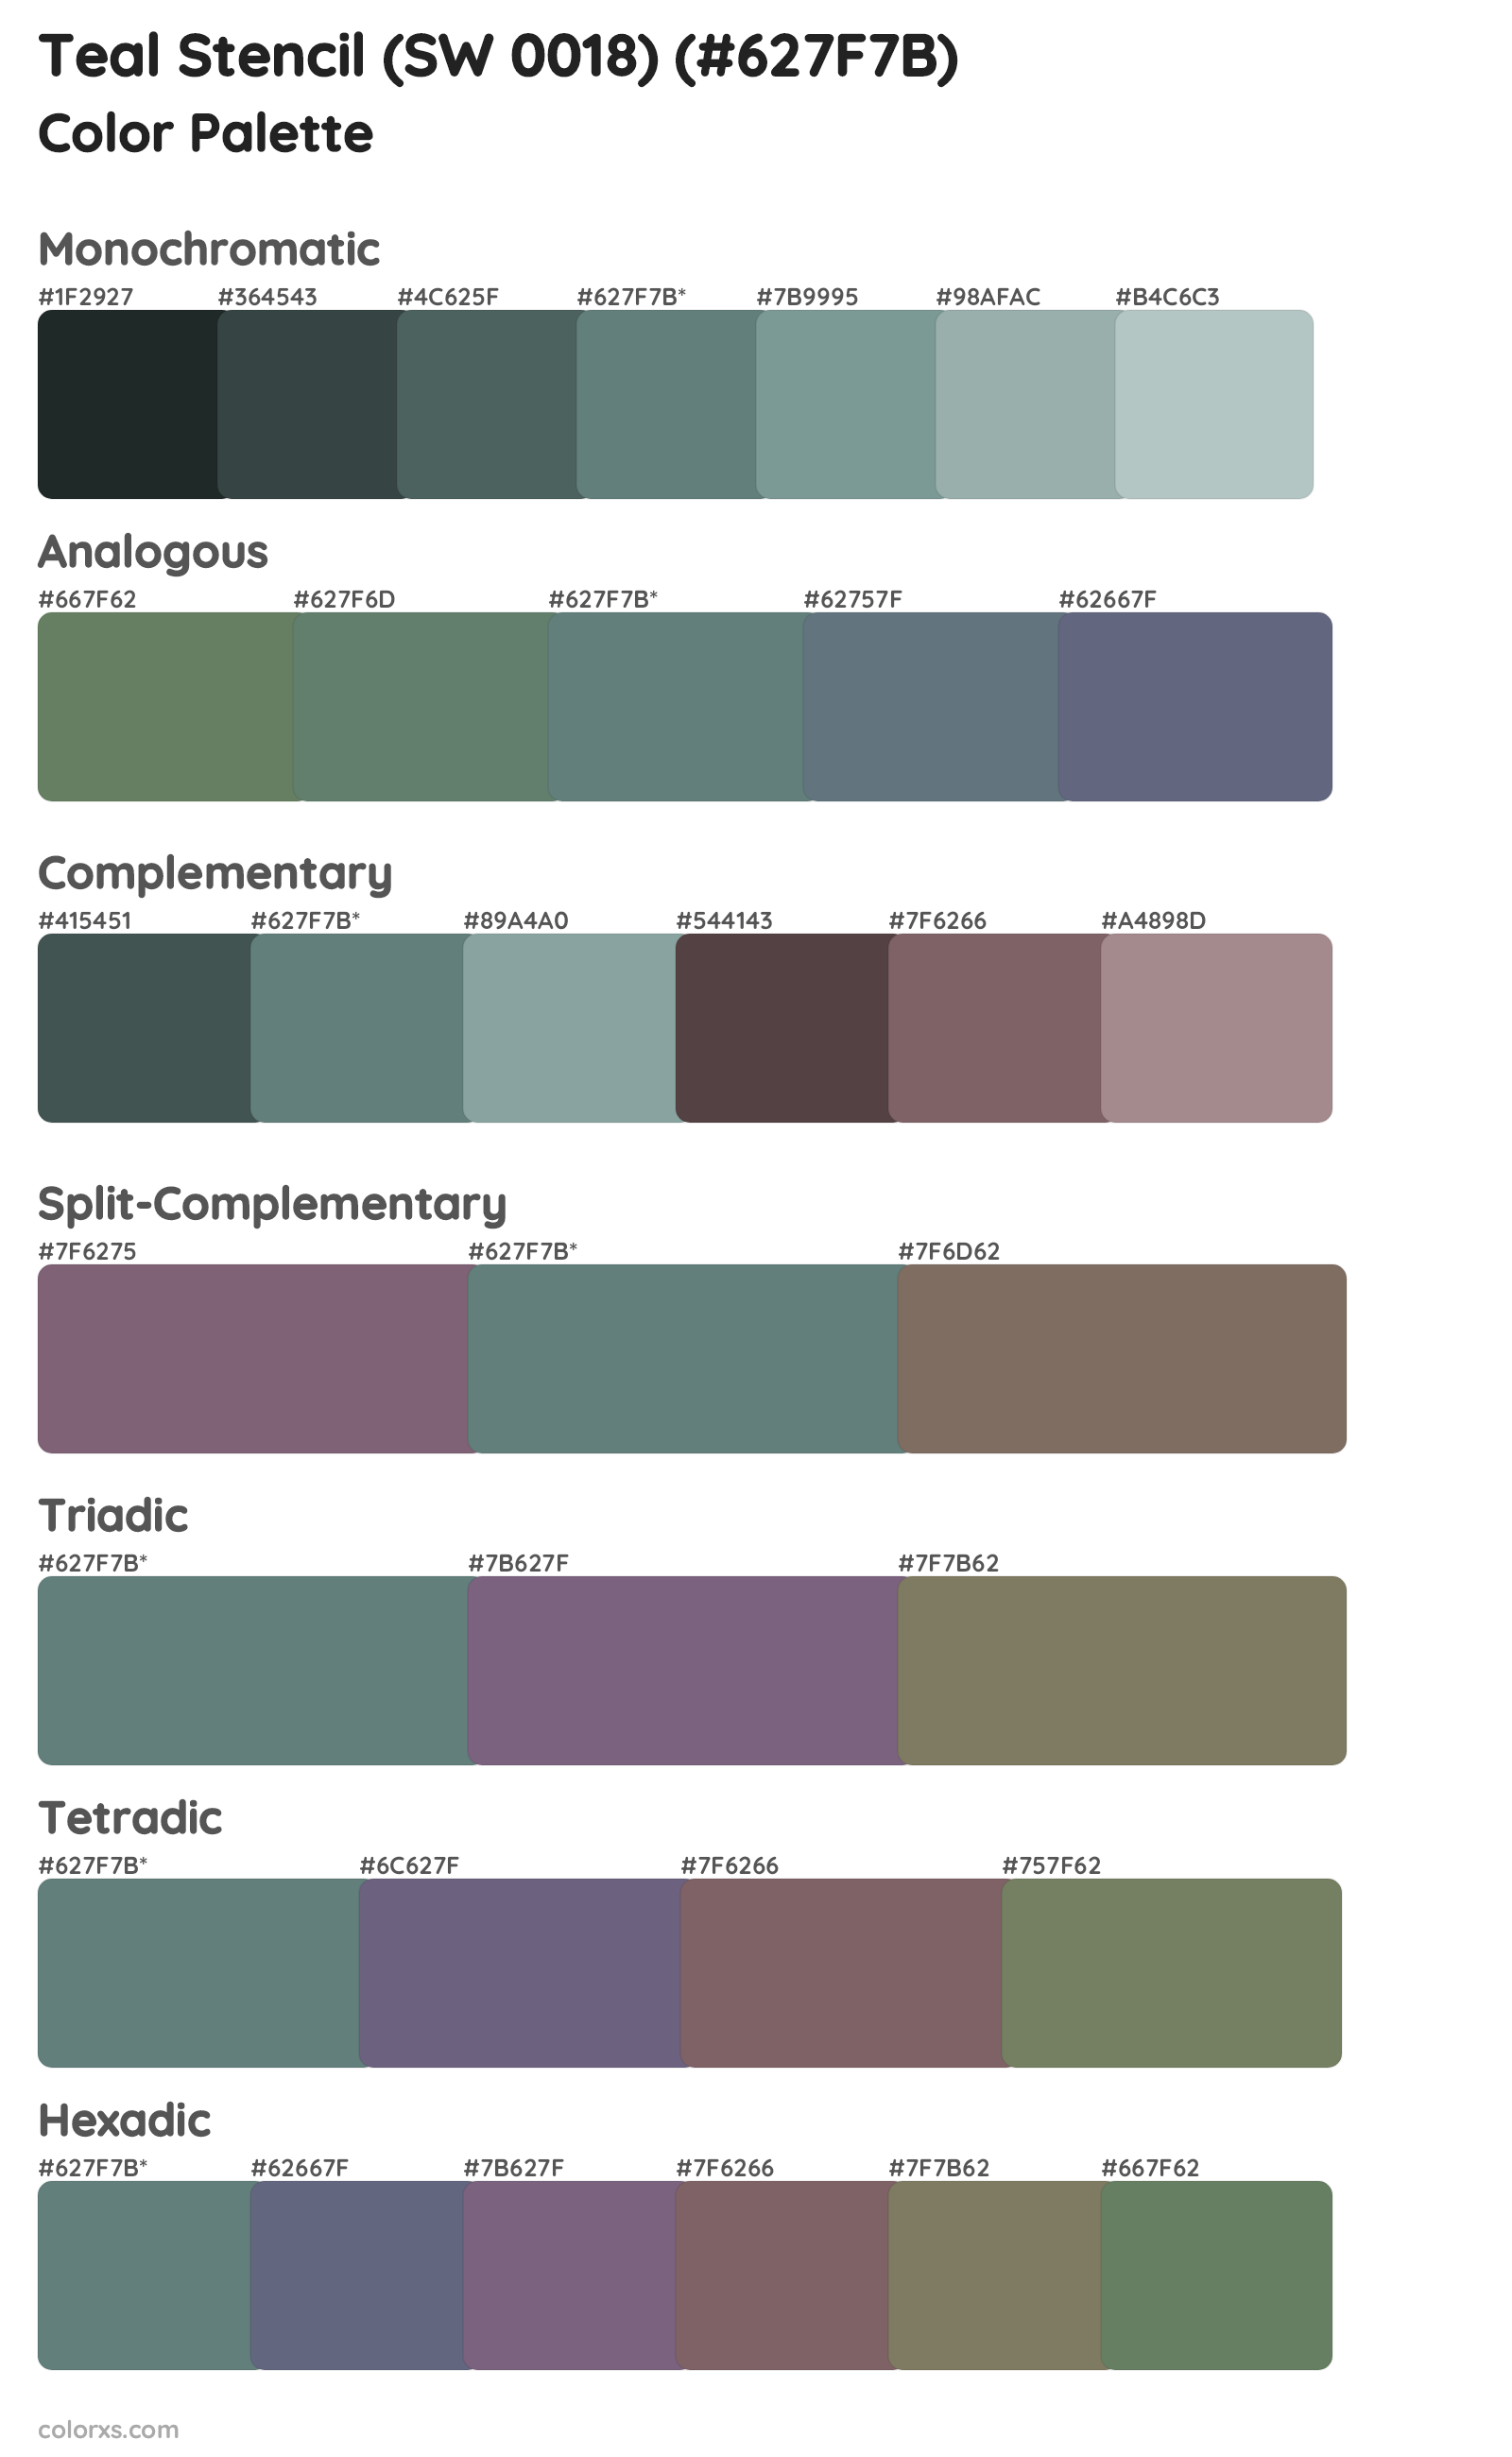 Teal Stencil (SW 0018) Color Scheme Palettes